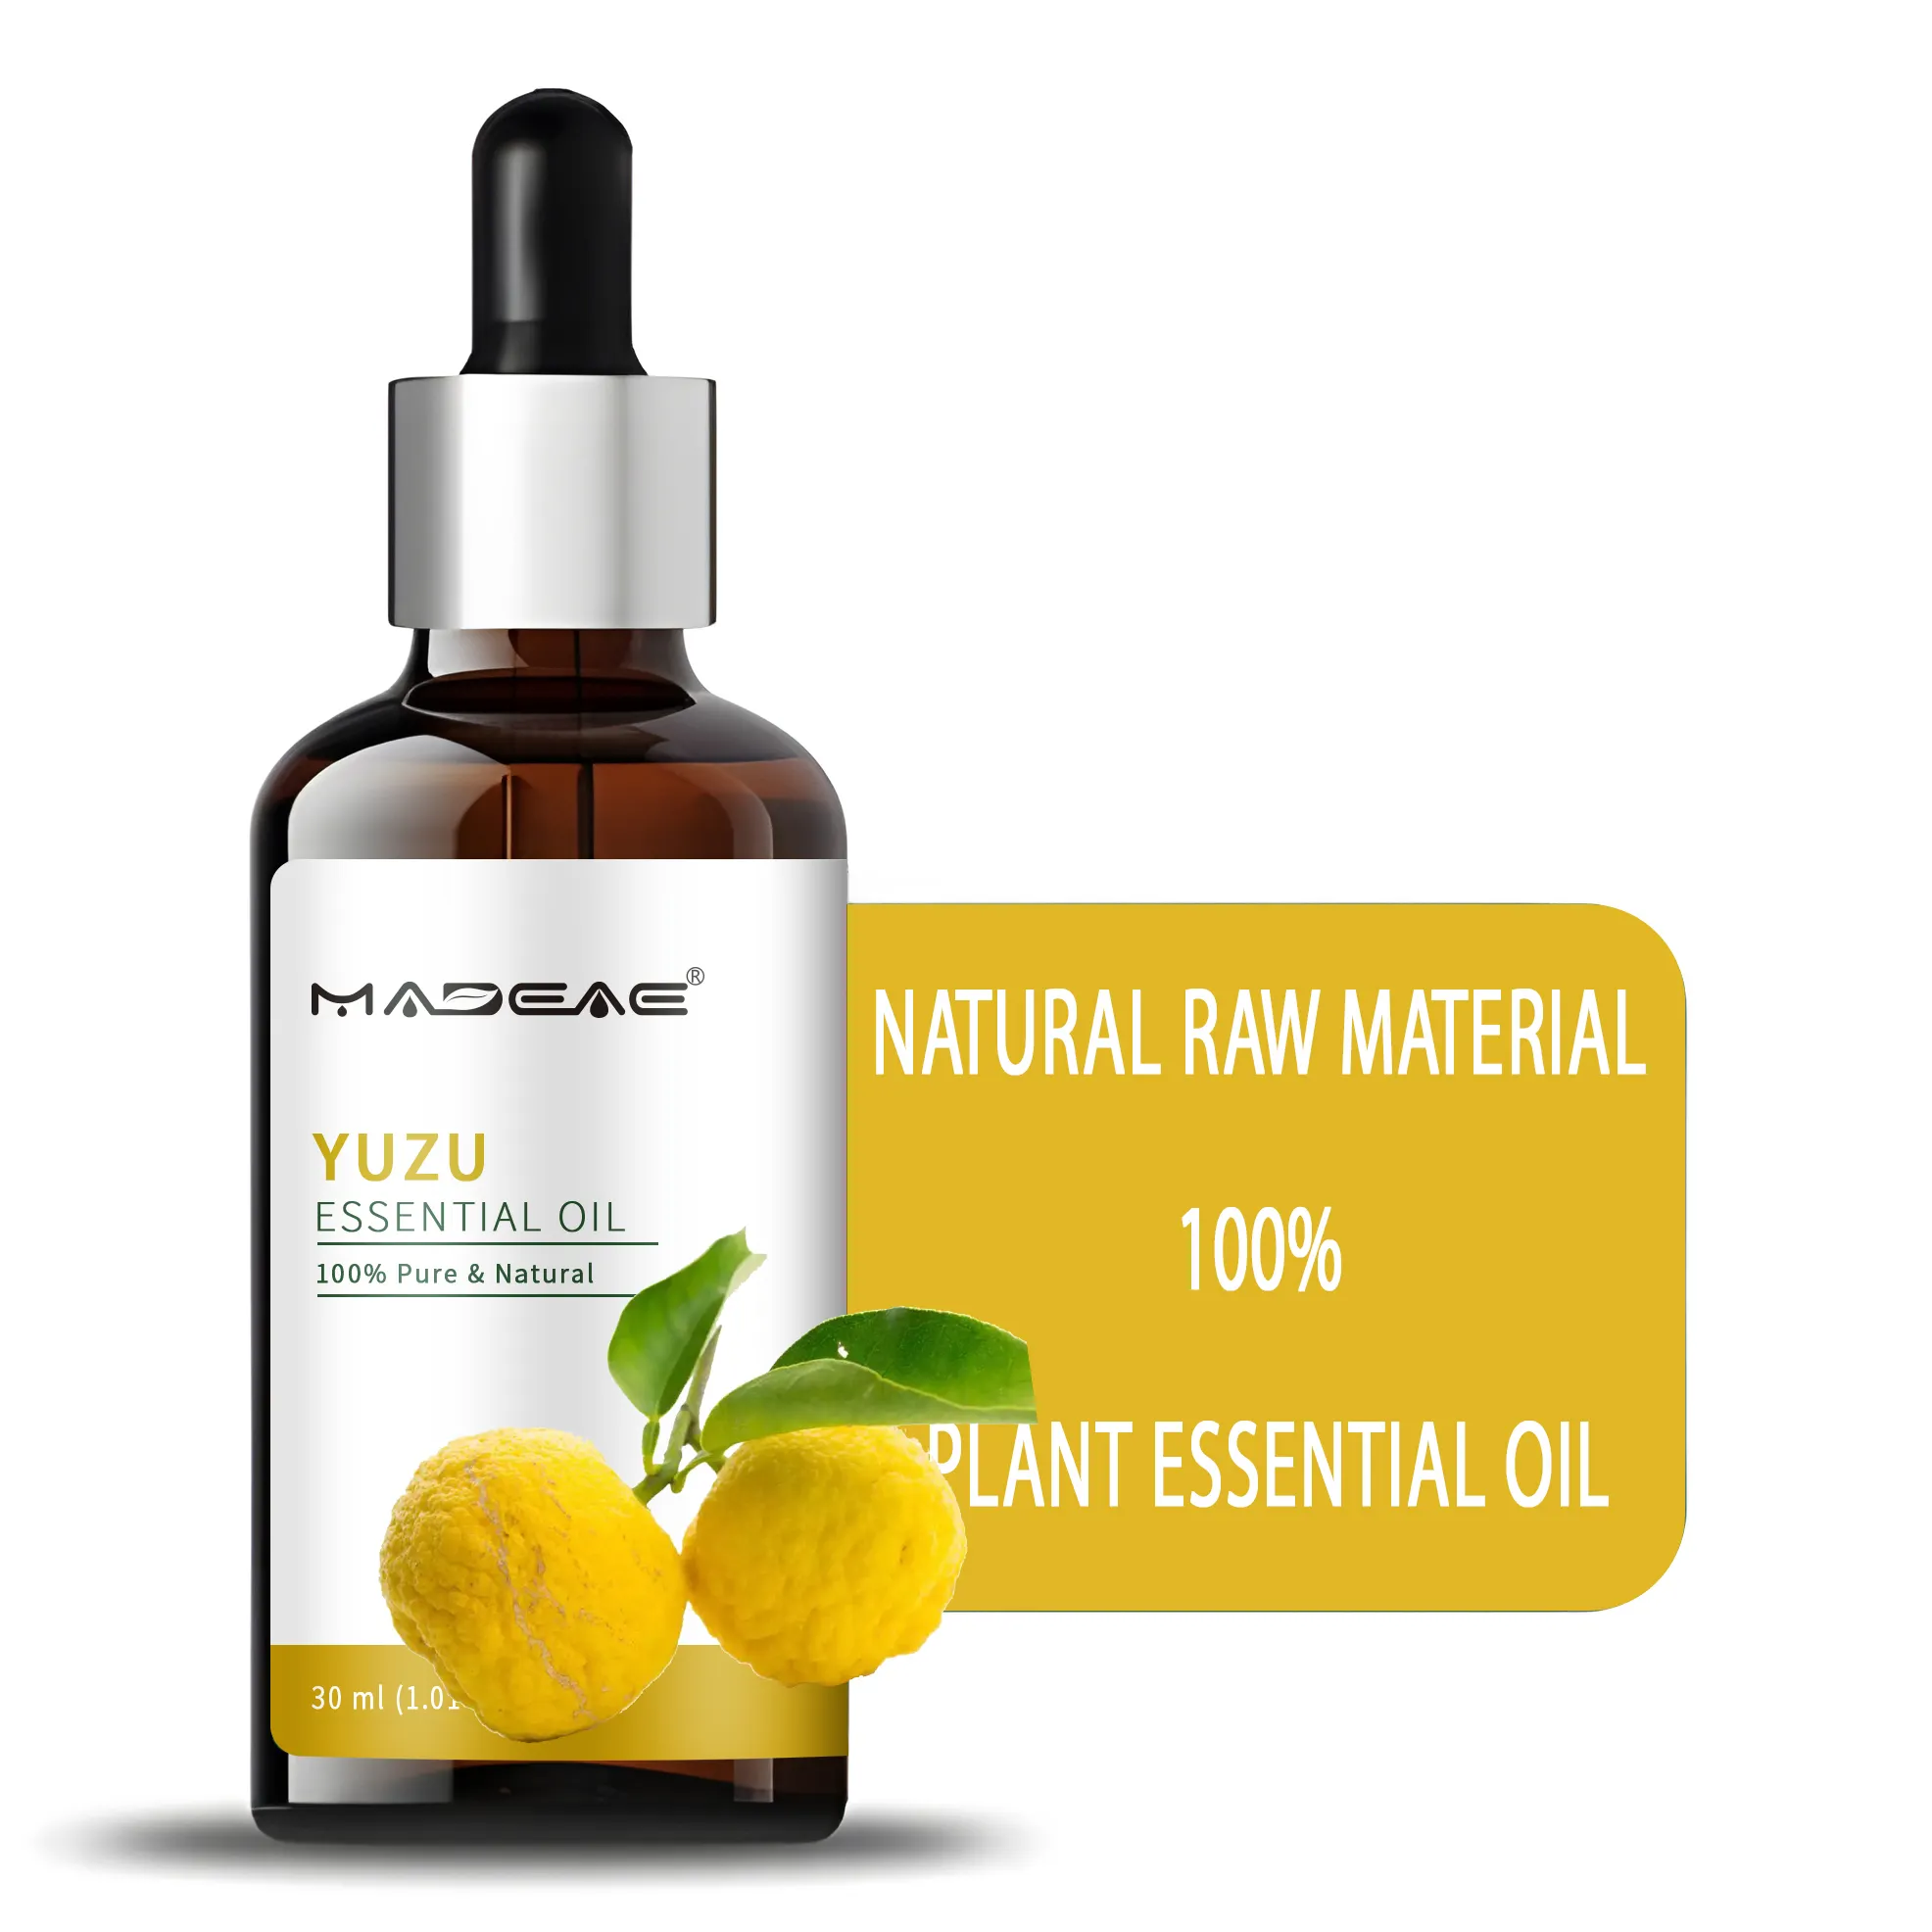 Vente en gros d'huile essentielle de yuzu pour les soins de la peau et des cheveux 100% huile de yuzu naturelle pure de qualité alimentaire